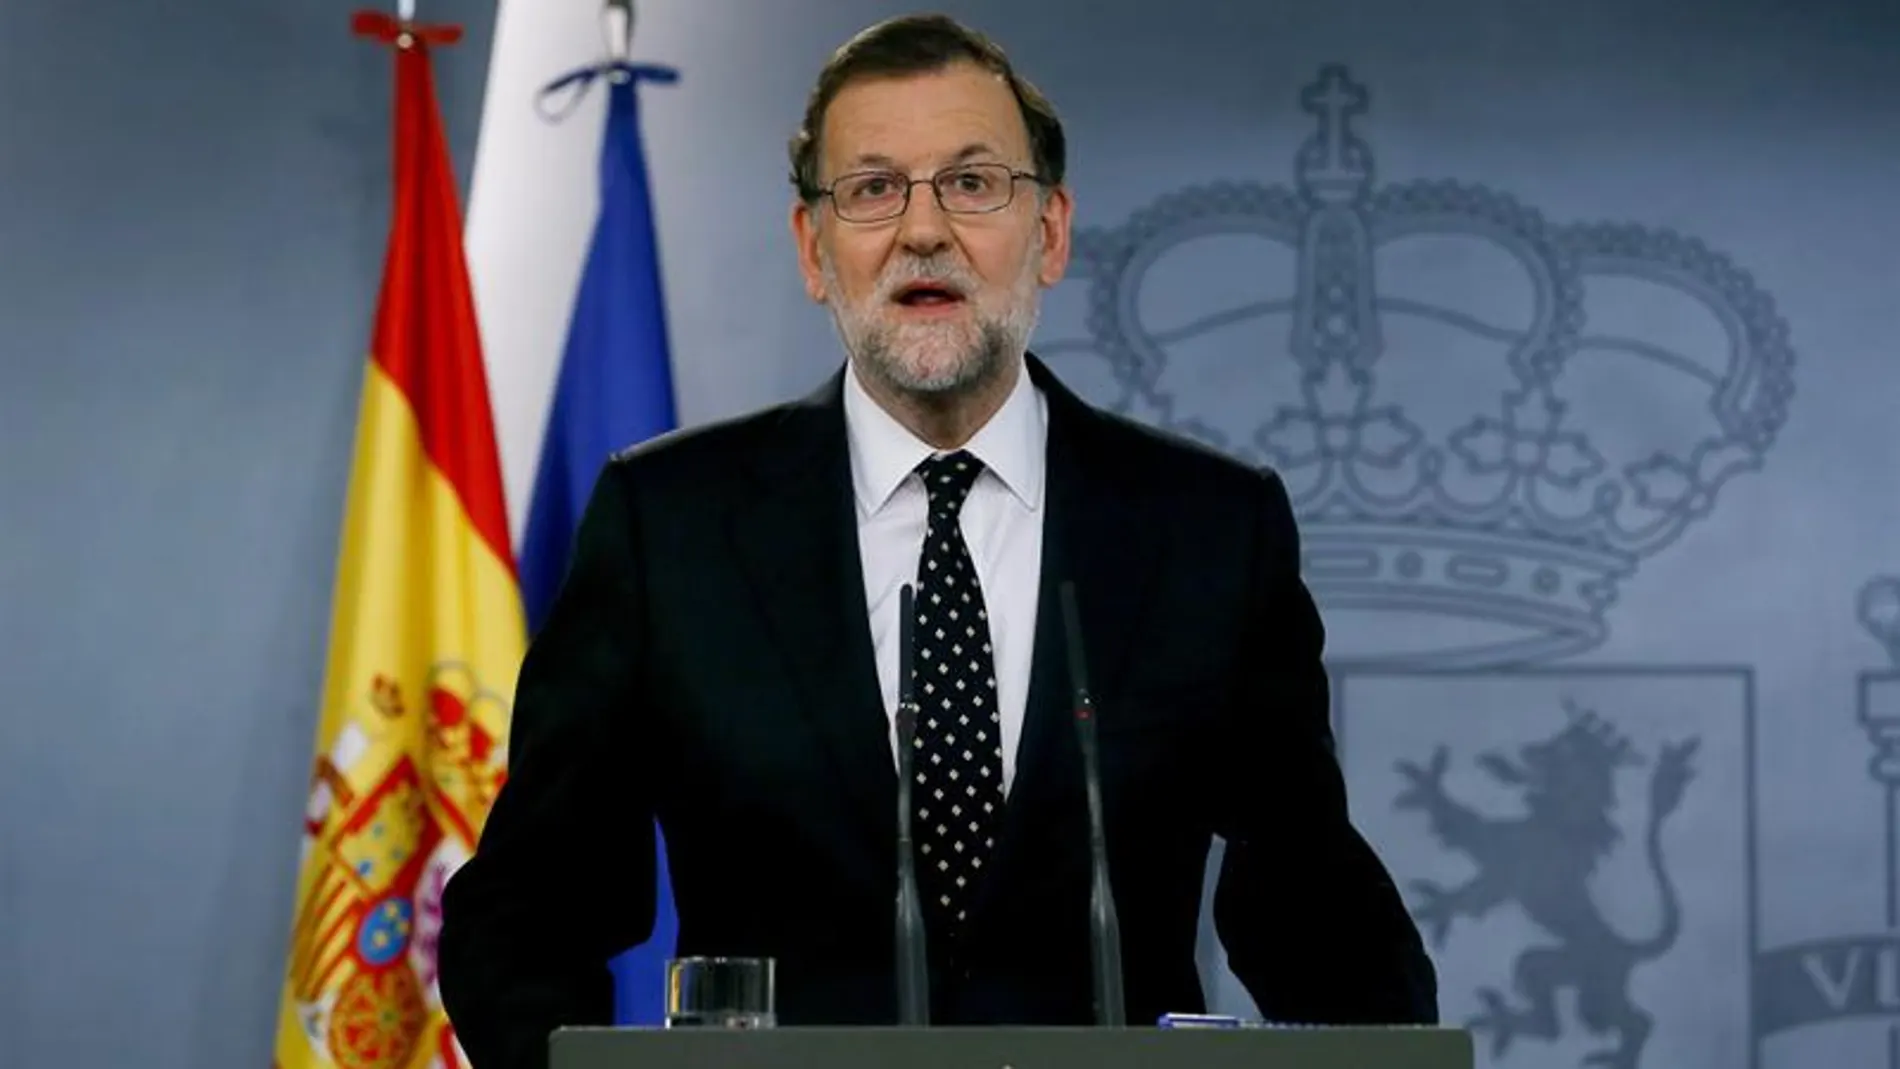 El presidente del Gobierno español en funciones, Mariano Rajoy, durante la rueda de prensa 